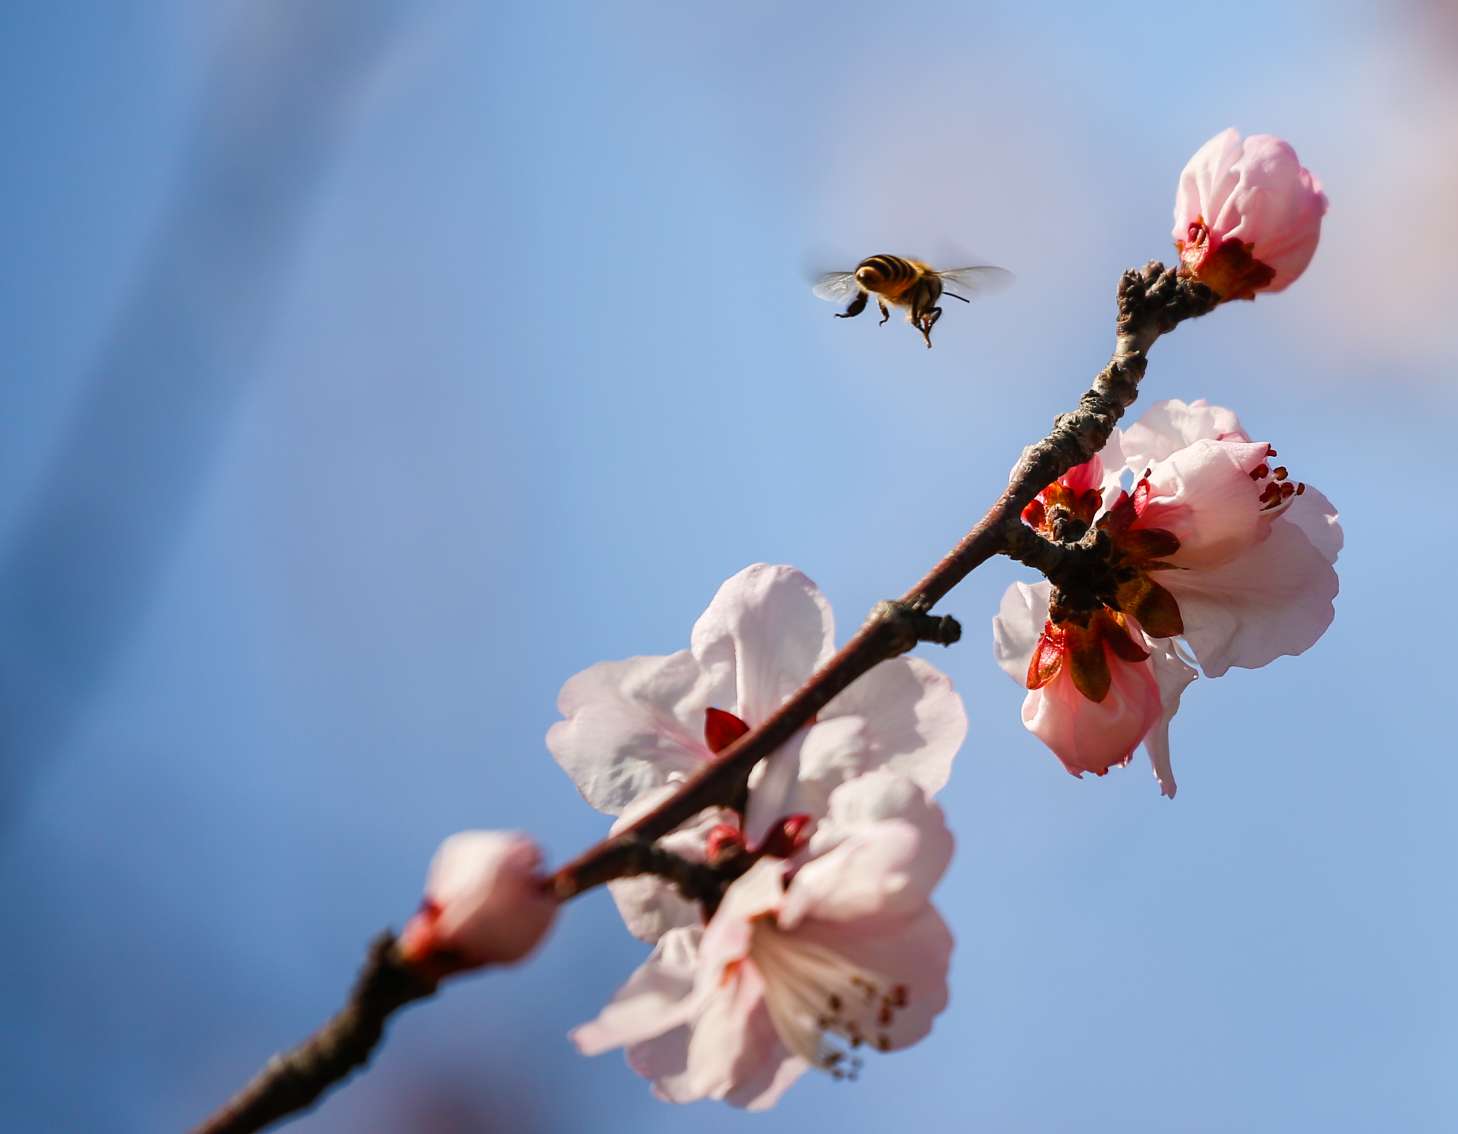 济南千佛山的山桃花开了,引得无数蜜蜂飞舞采蜜,酷似一幅幅蜂花恋春图